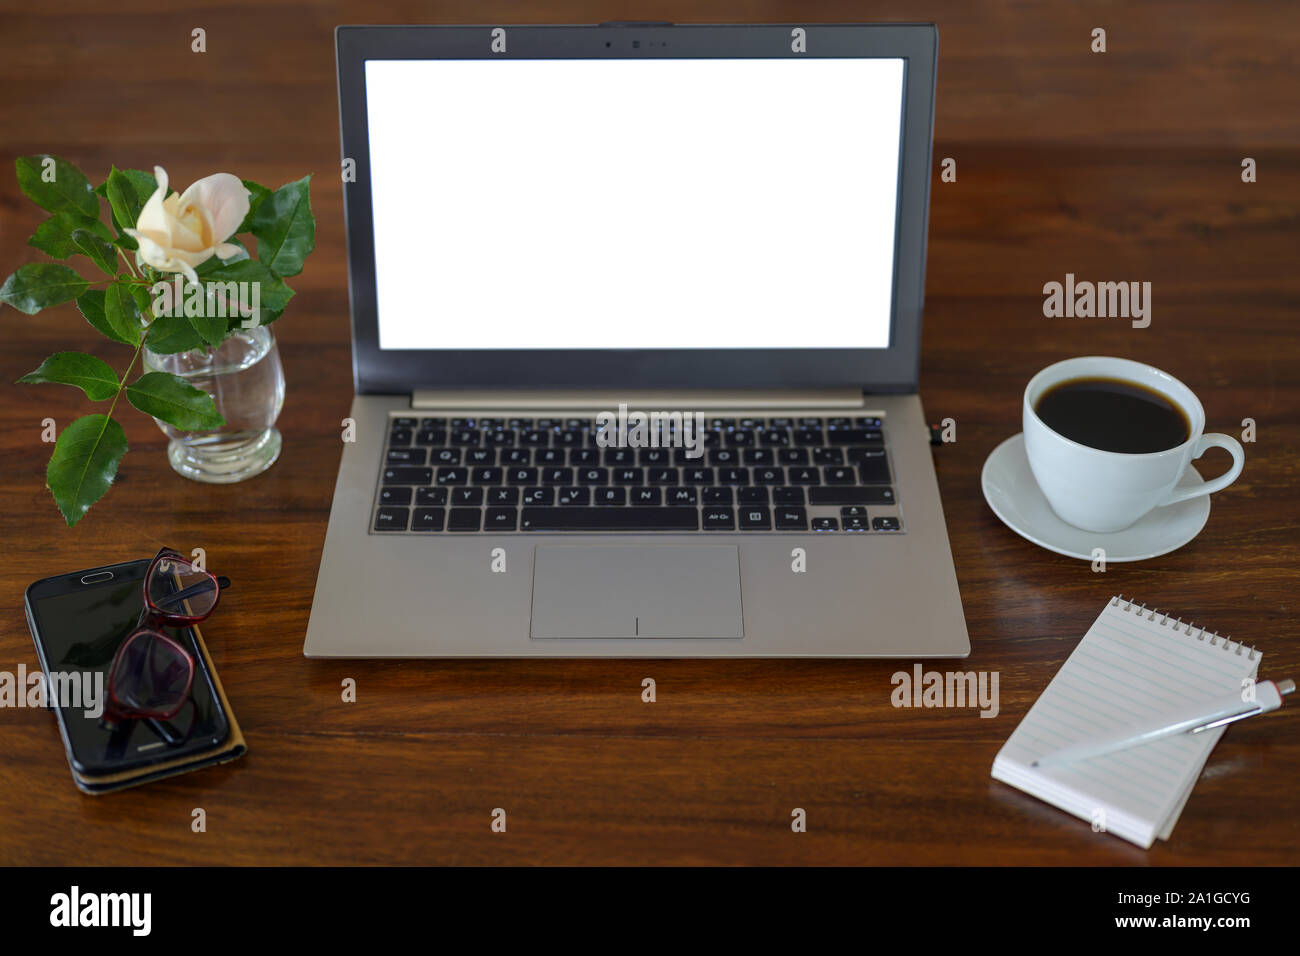 Des maquettes, ordinateur portable avec écran blanc sur un bureau en bois avec le bloc-notes, verres, tasses à café, téléphone et une fleur, business espace de travail dans un bureau, copie Banque D'Images